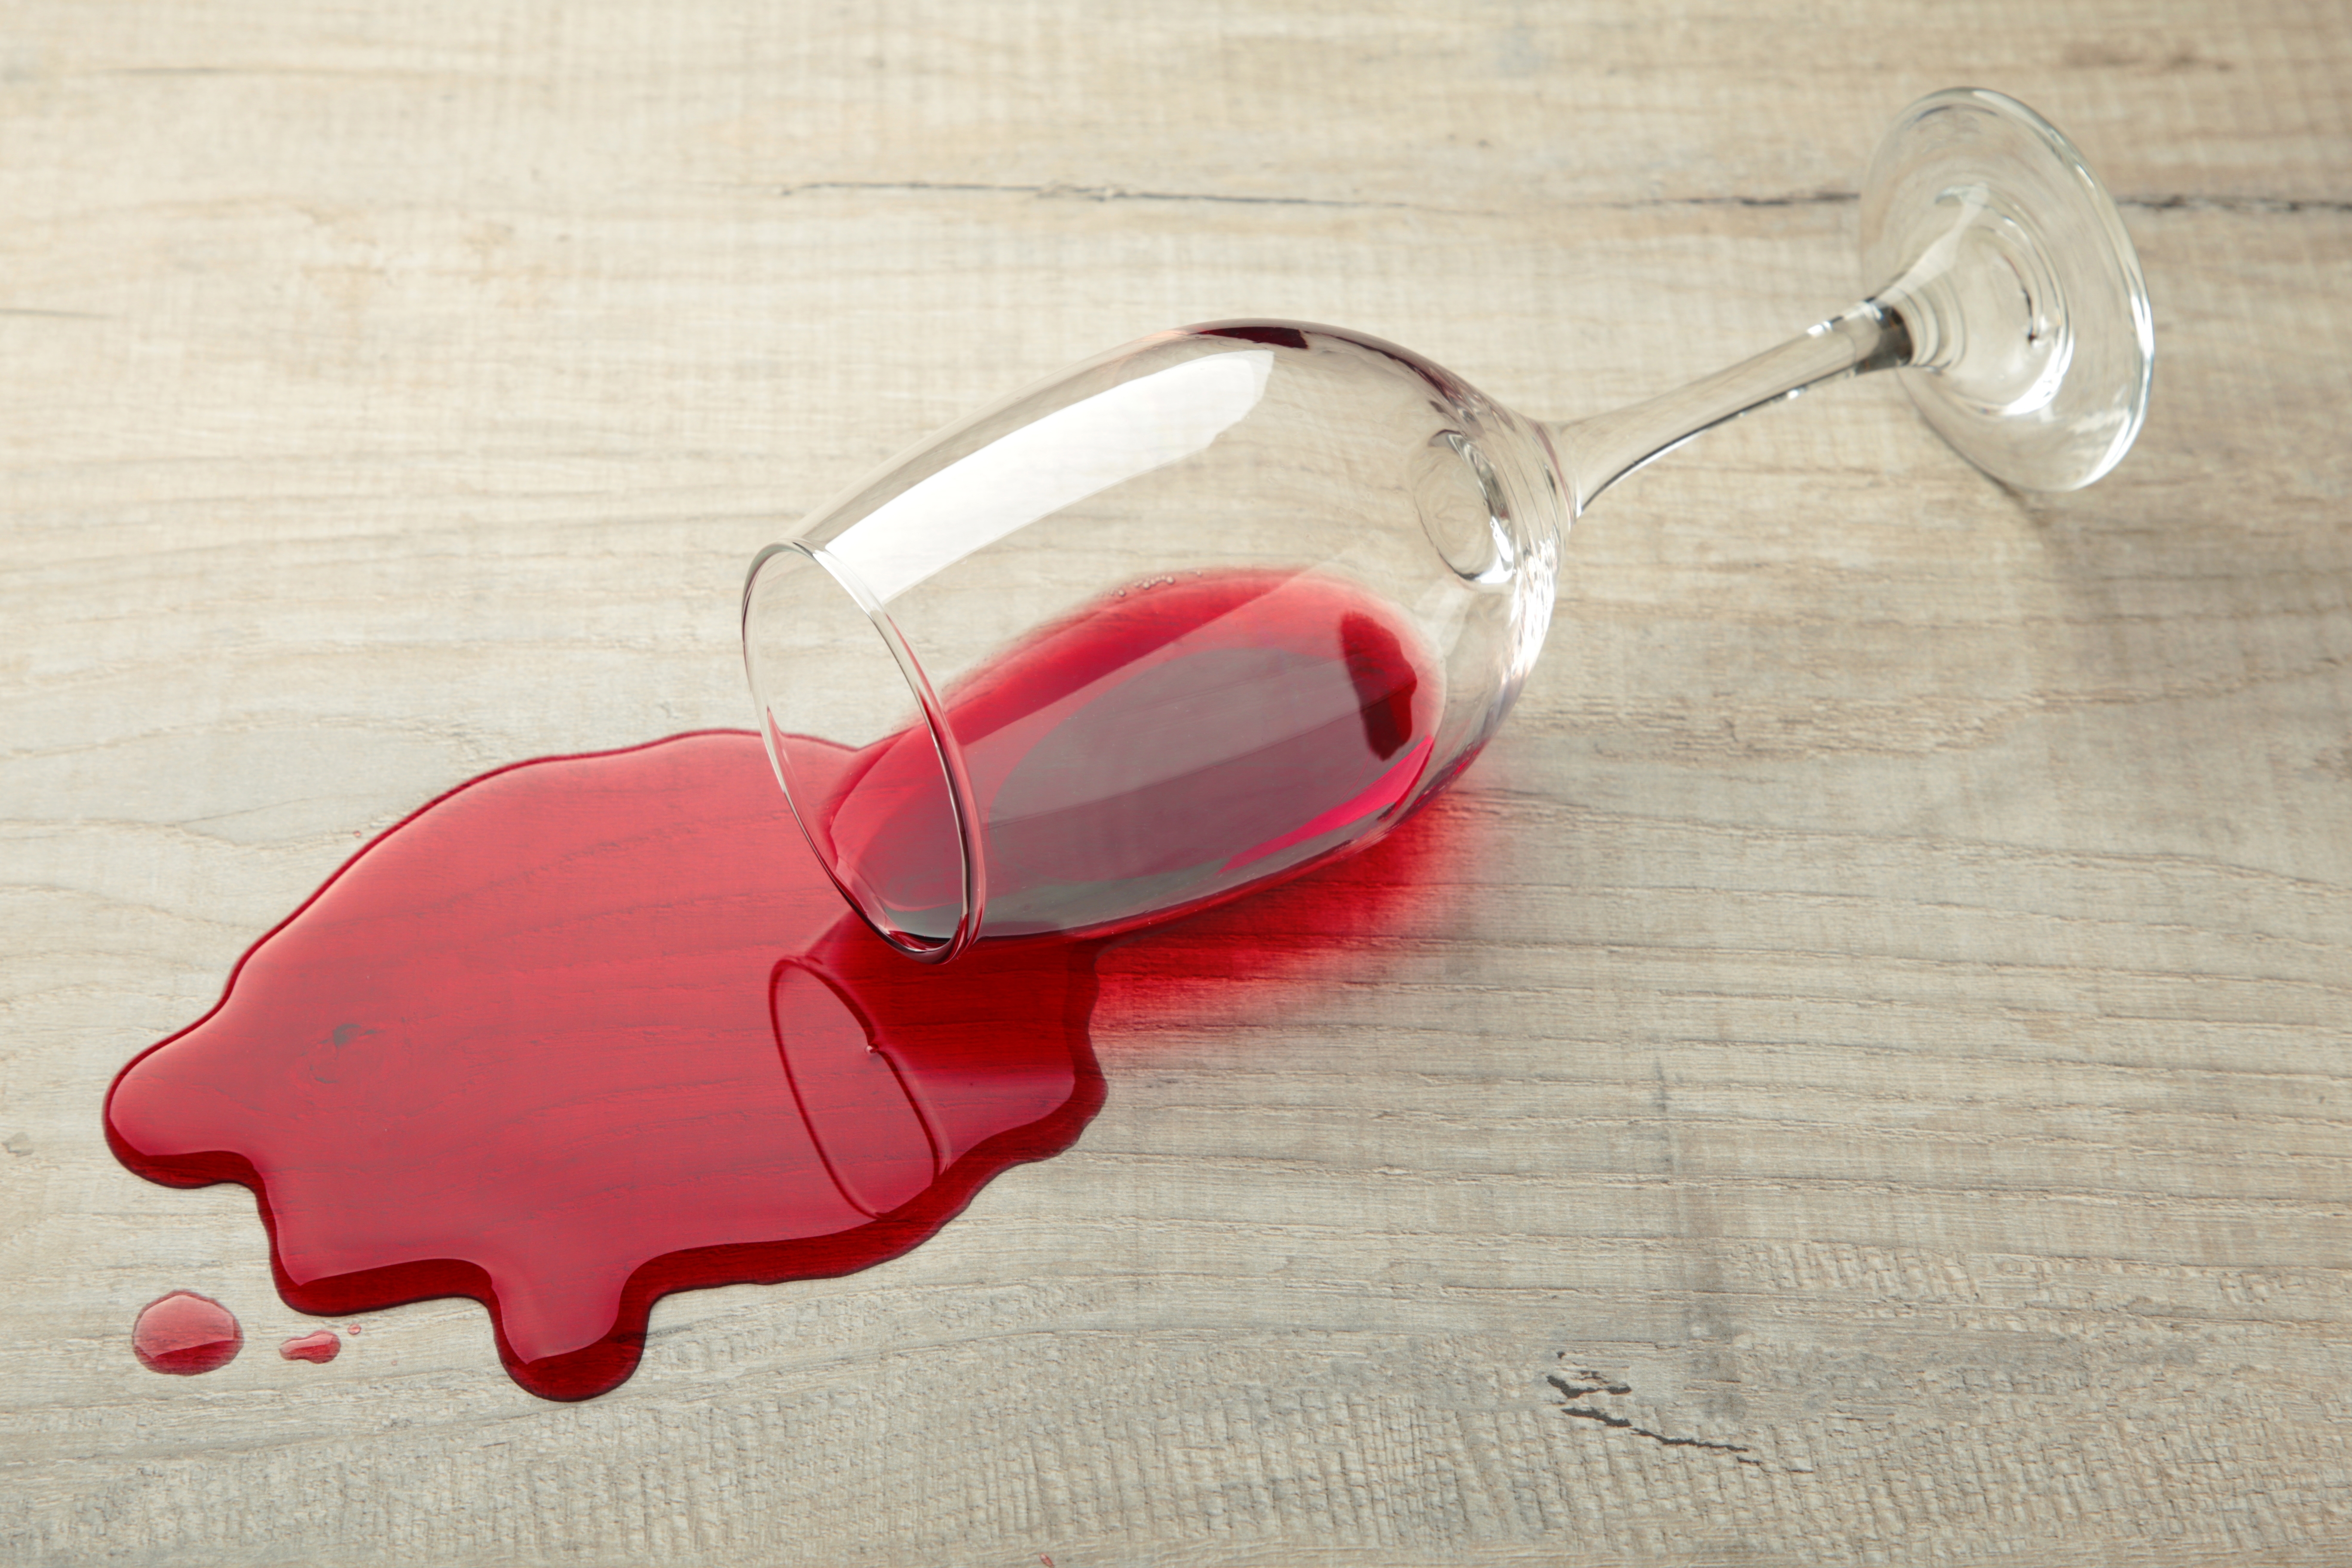 Un vaso de vino tinto cayó sobre el laminado, el vino se derramó por el suelo. | Fuente: Shutterstock